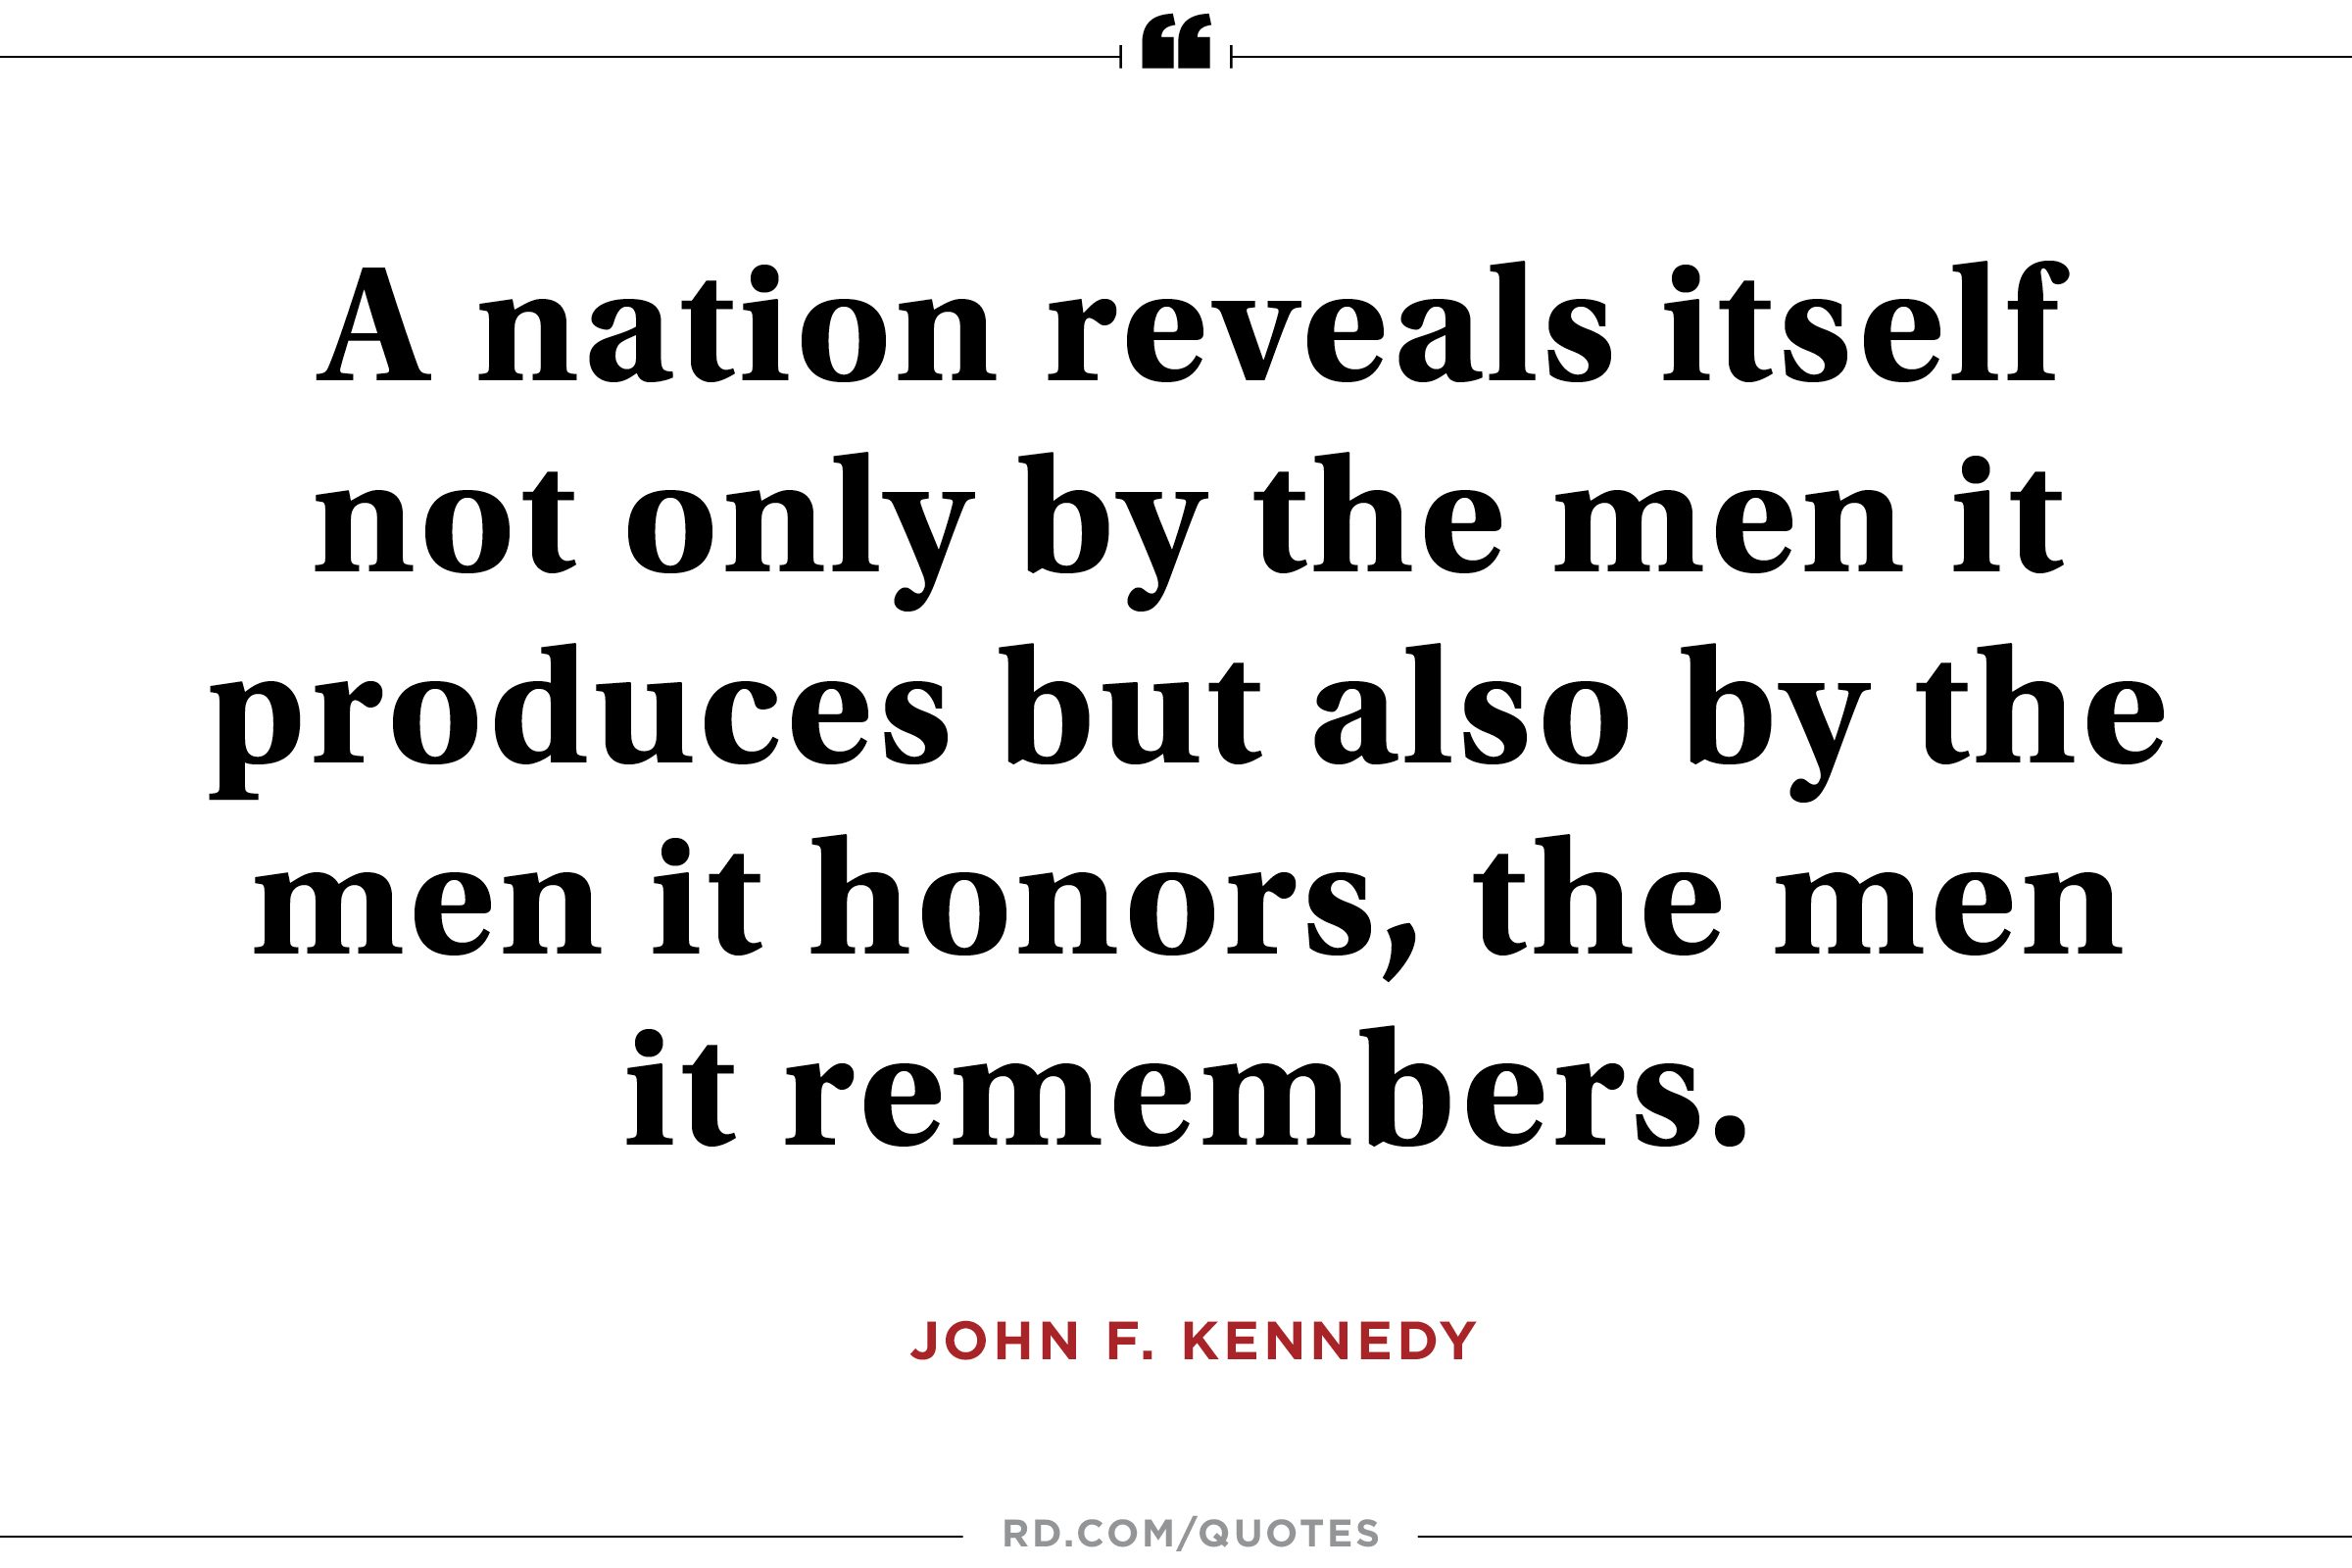 JFK on remembering good men